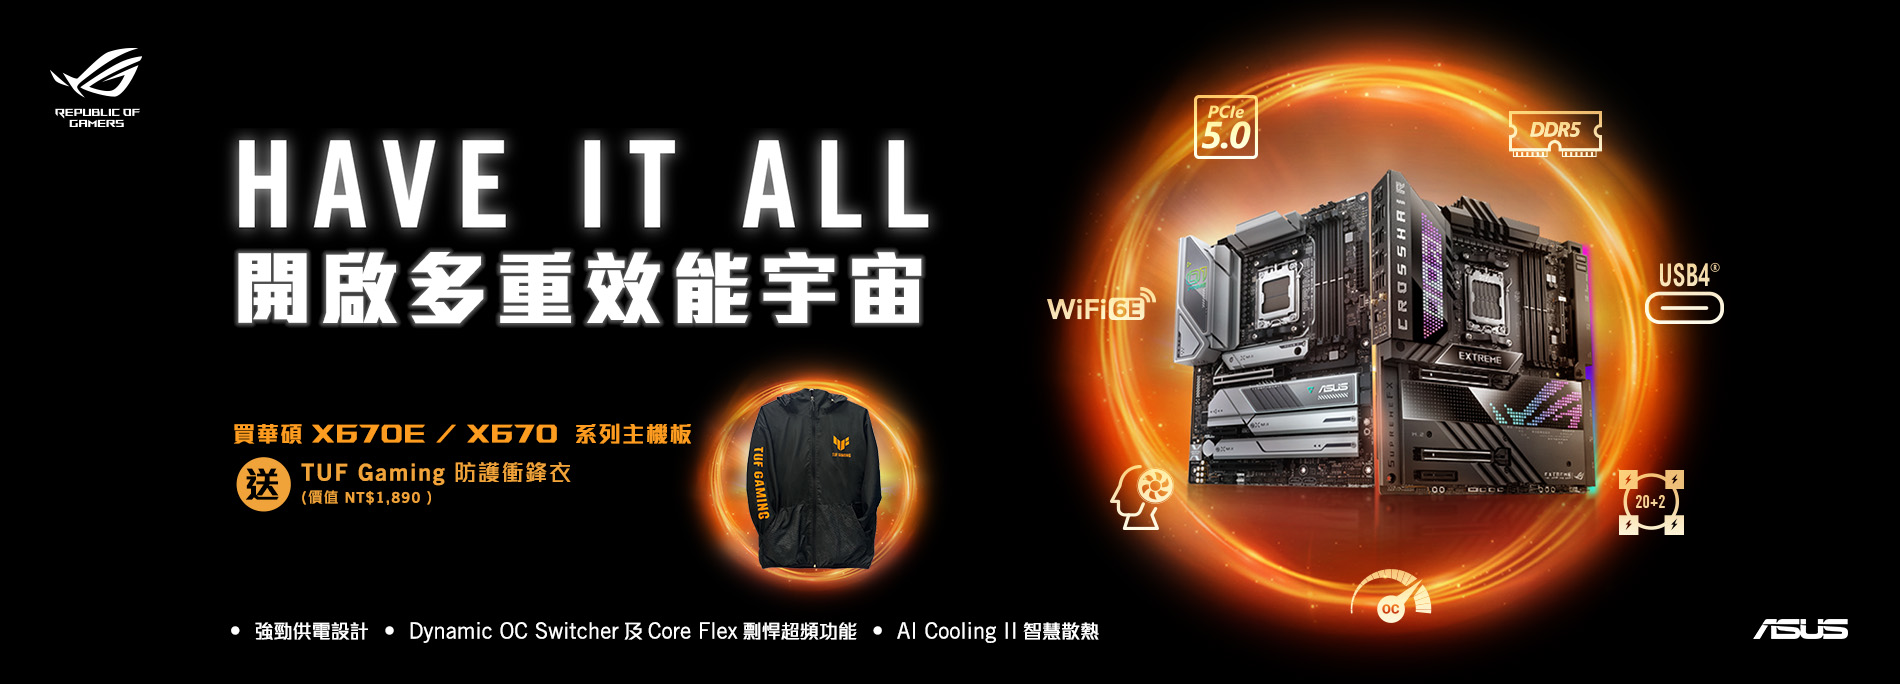 買華碩 X670E / X670 全系列主機板，送『TUF Gaming 防護衝鋒衣』! (價值NT$1,890，數量有限，送完為止！)